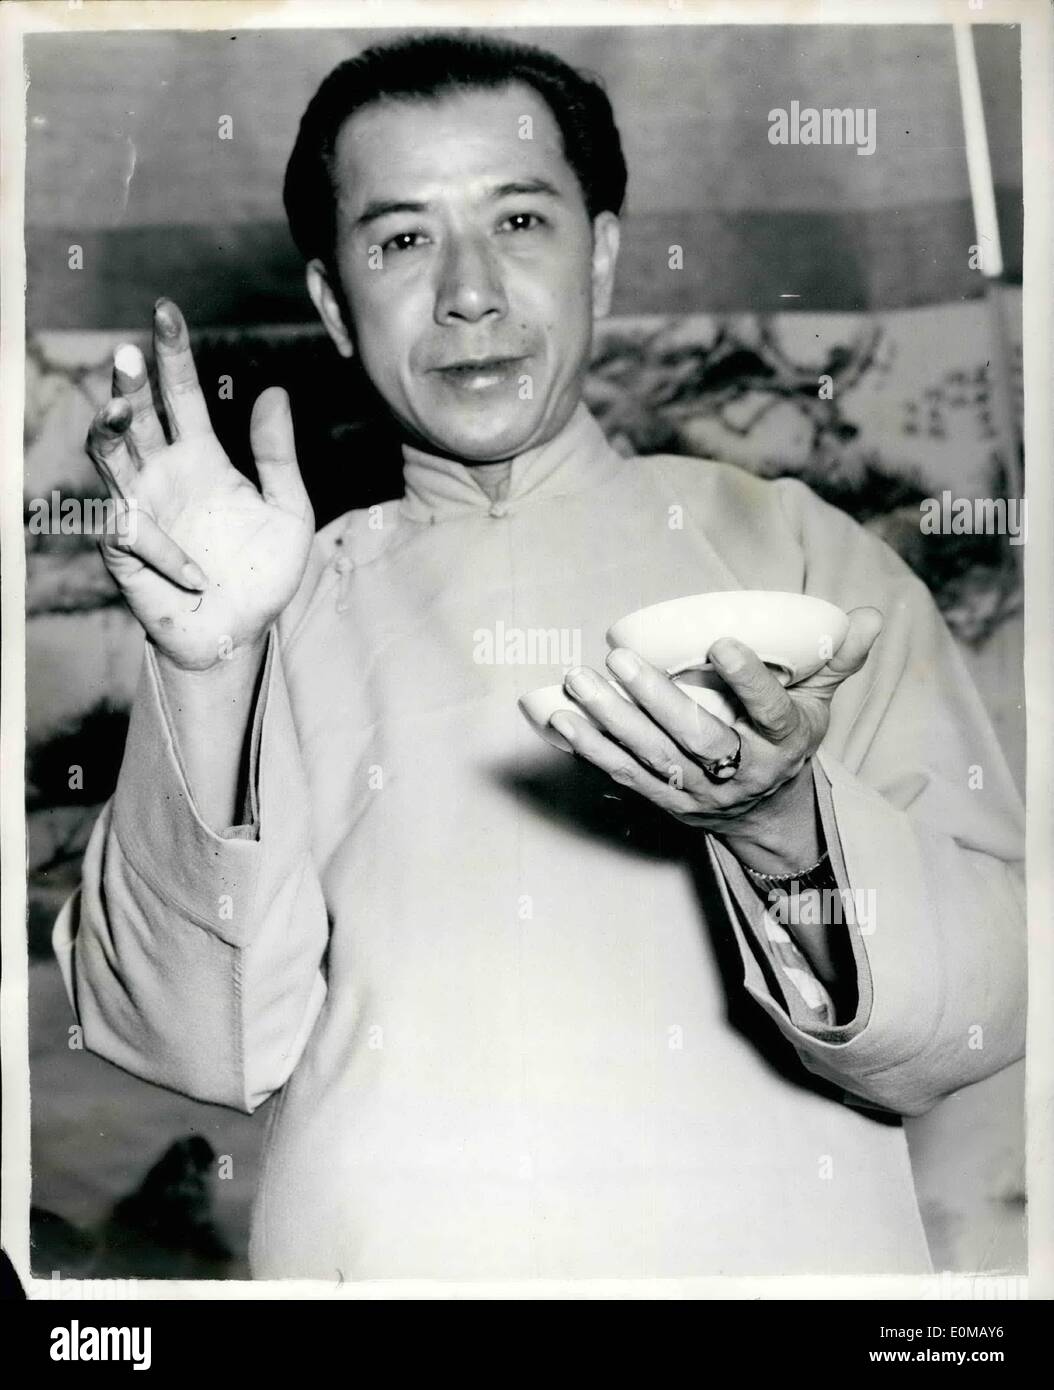 7. Juli 1954 - Ausstellung des chinesischen Finger-Painting: eine Ausstellung von Tse-Hua (Chinesisch Fingermalerei) von Singapur Künstler, Wu Tsai Yen, öffnet morgen am Imperial Institute, South Kensington. Soweit bekannt ist, ist dies die erste Ausstellung und Demonstration in diesem Land, oder in der Tat, jedes westliche Land, ein sehr alter chinesischer Kunst von denen gibt es heute einige versierte Exponenten. Herr Wu ist in der Tat, wahrscheinlich der einzige Künstler der Welt, ausschließlich mit dieser Methode malt Stockfoto